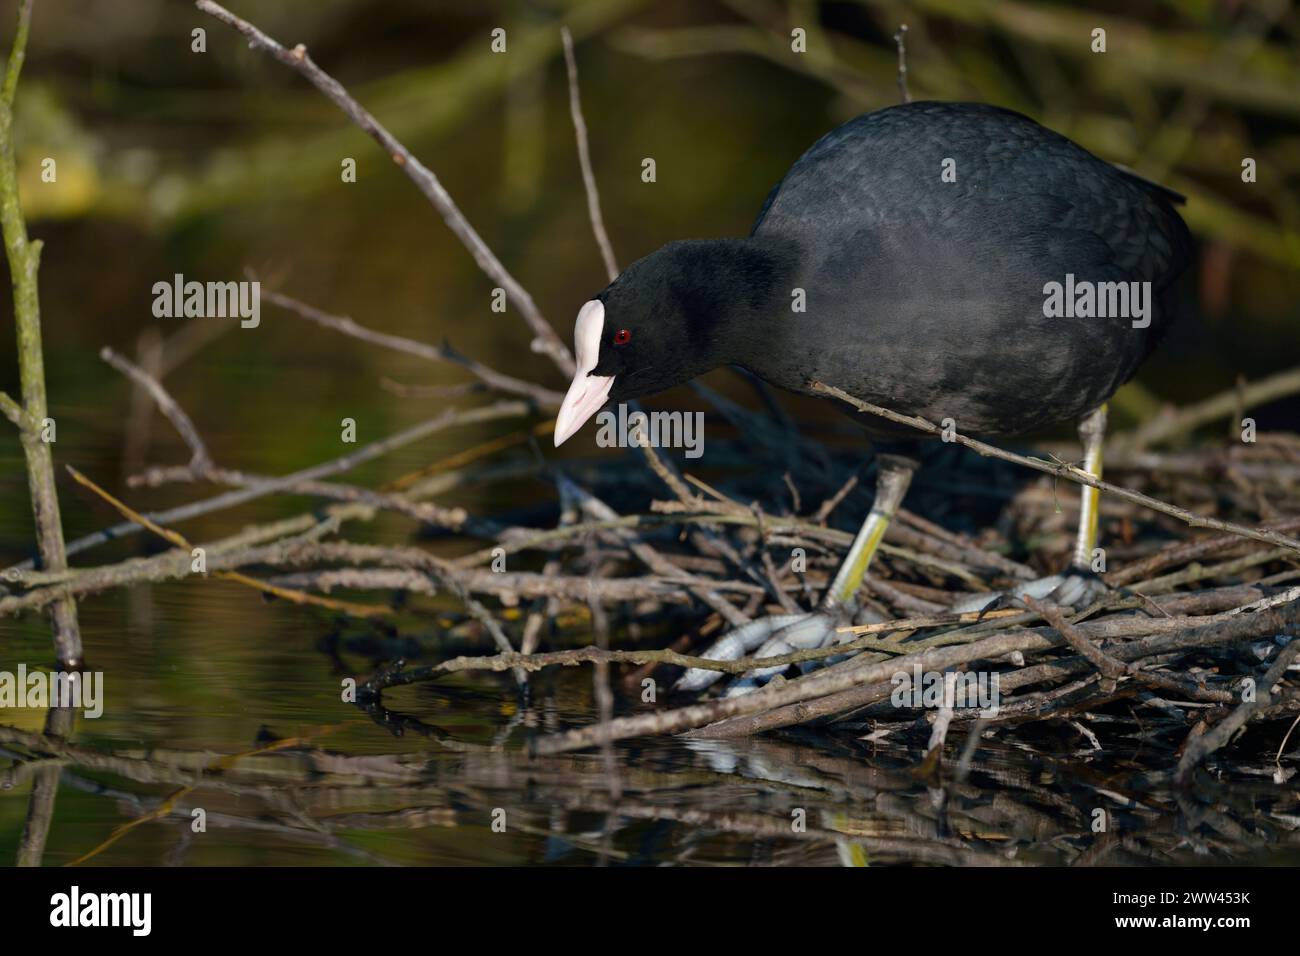 Black Coot / Coot / Coot eurasiatico ( Fulica atra ) costruisce il suo nido, nidificazione, costruzione di nidi sotto cespugli vicino al bordo dell'acqua, fauna selvatica, Europa. Foto Stock